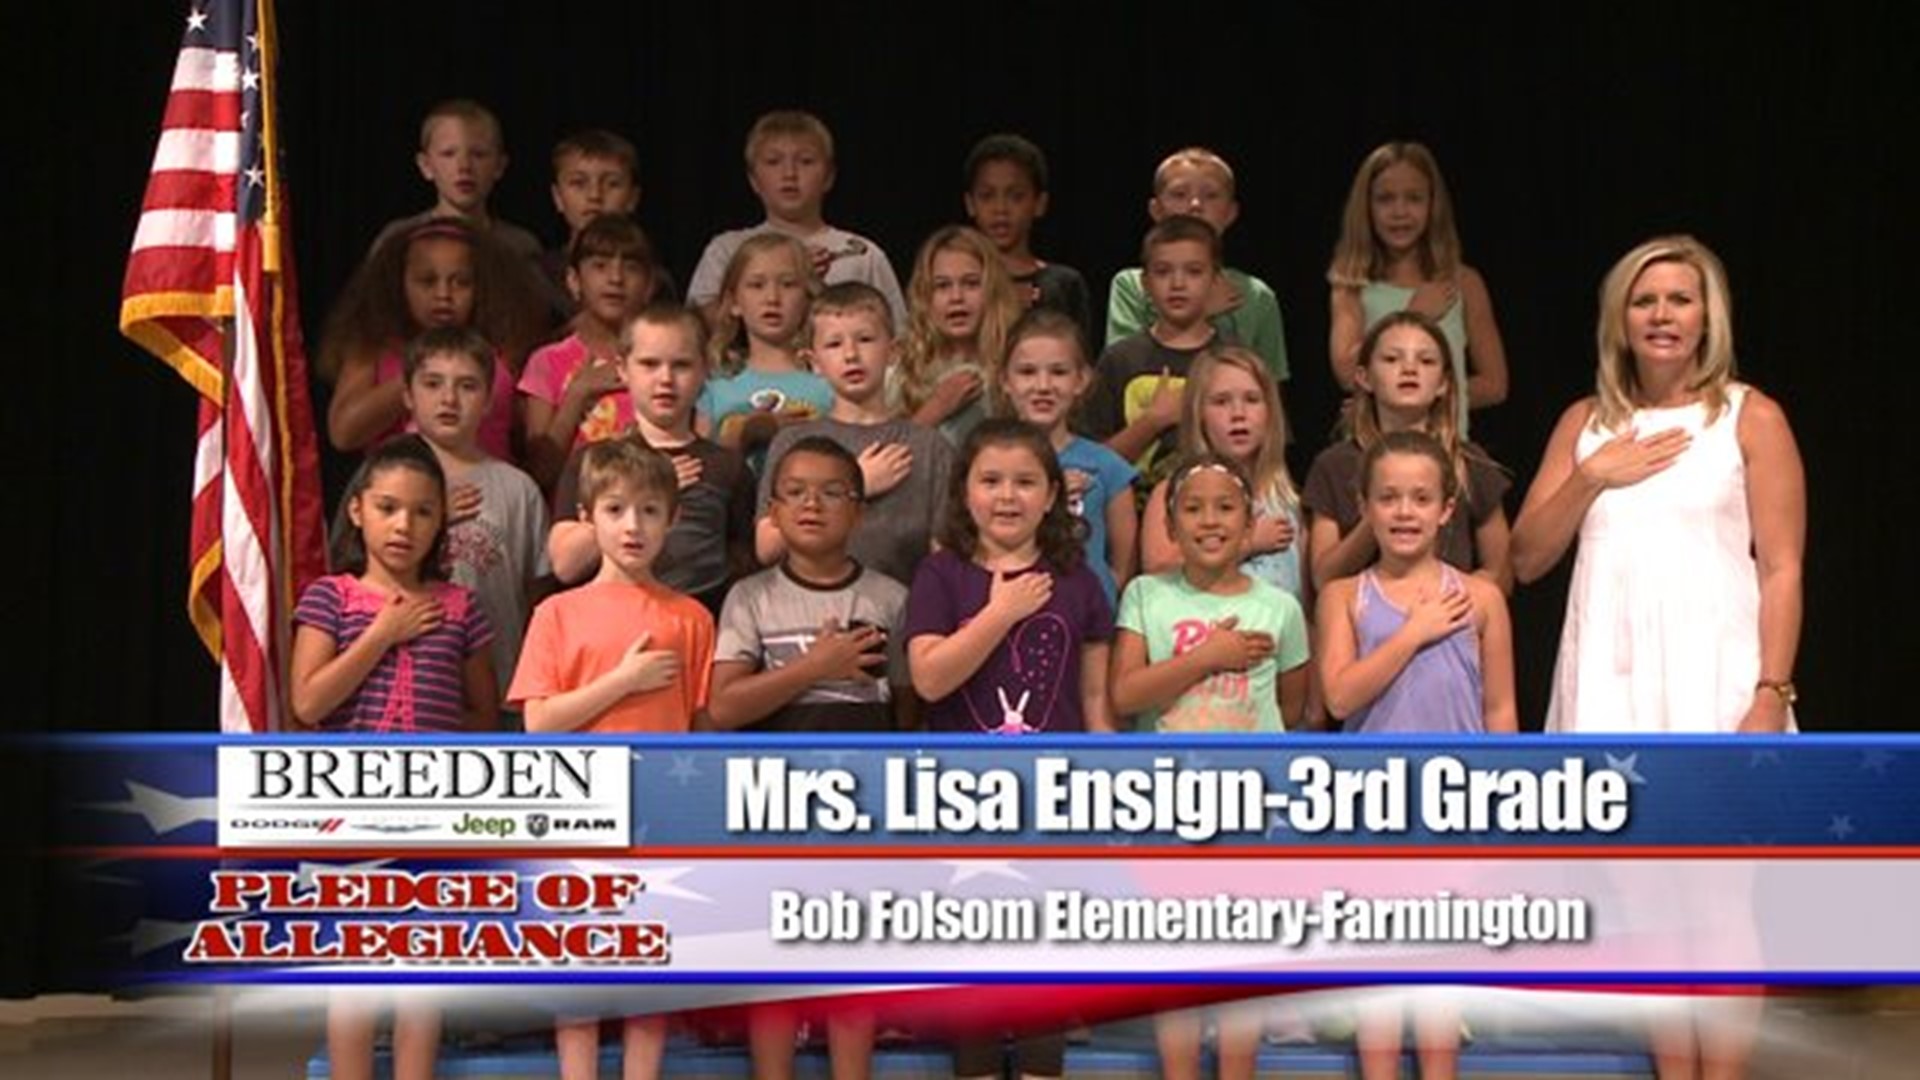 Bob Folsom Elementary, Farmington - Mrs. Lisa Ensign - 3rd Grade